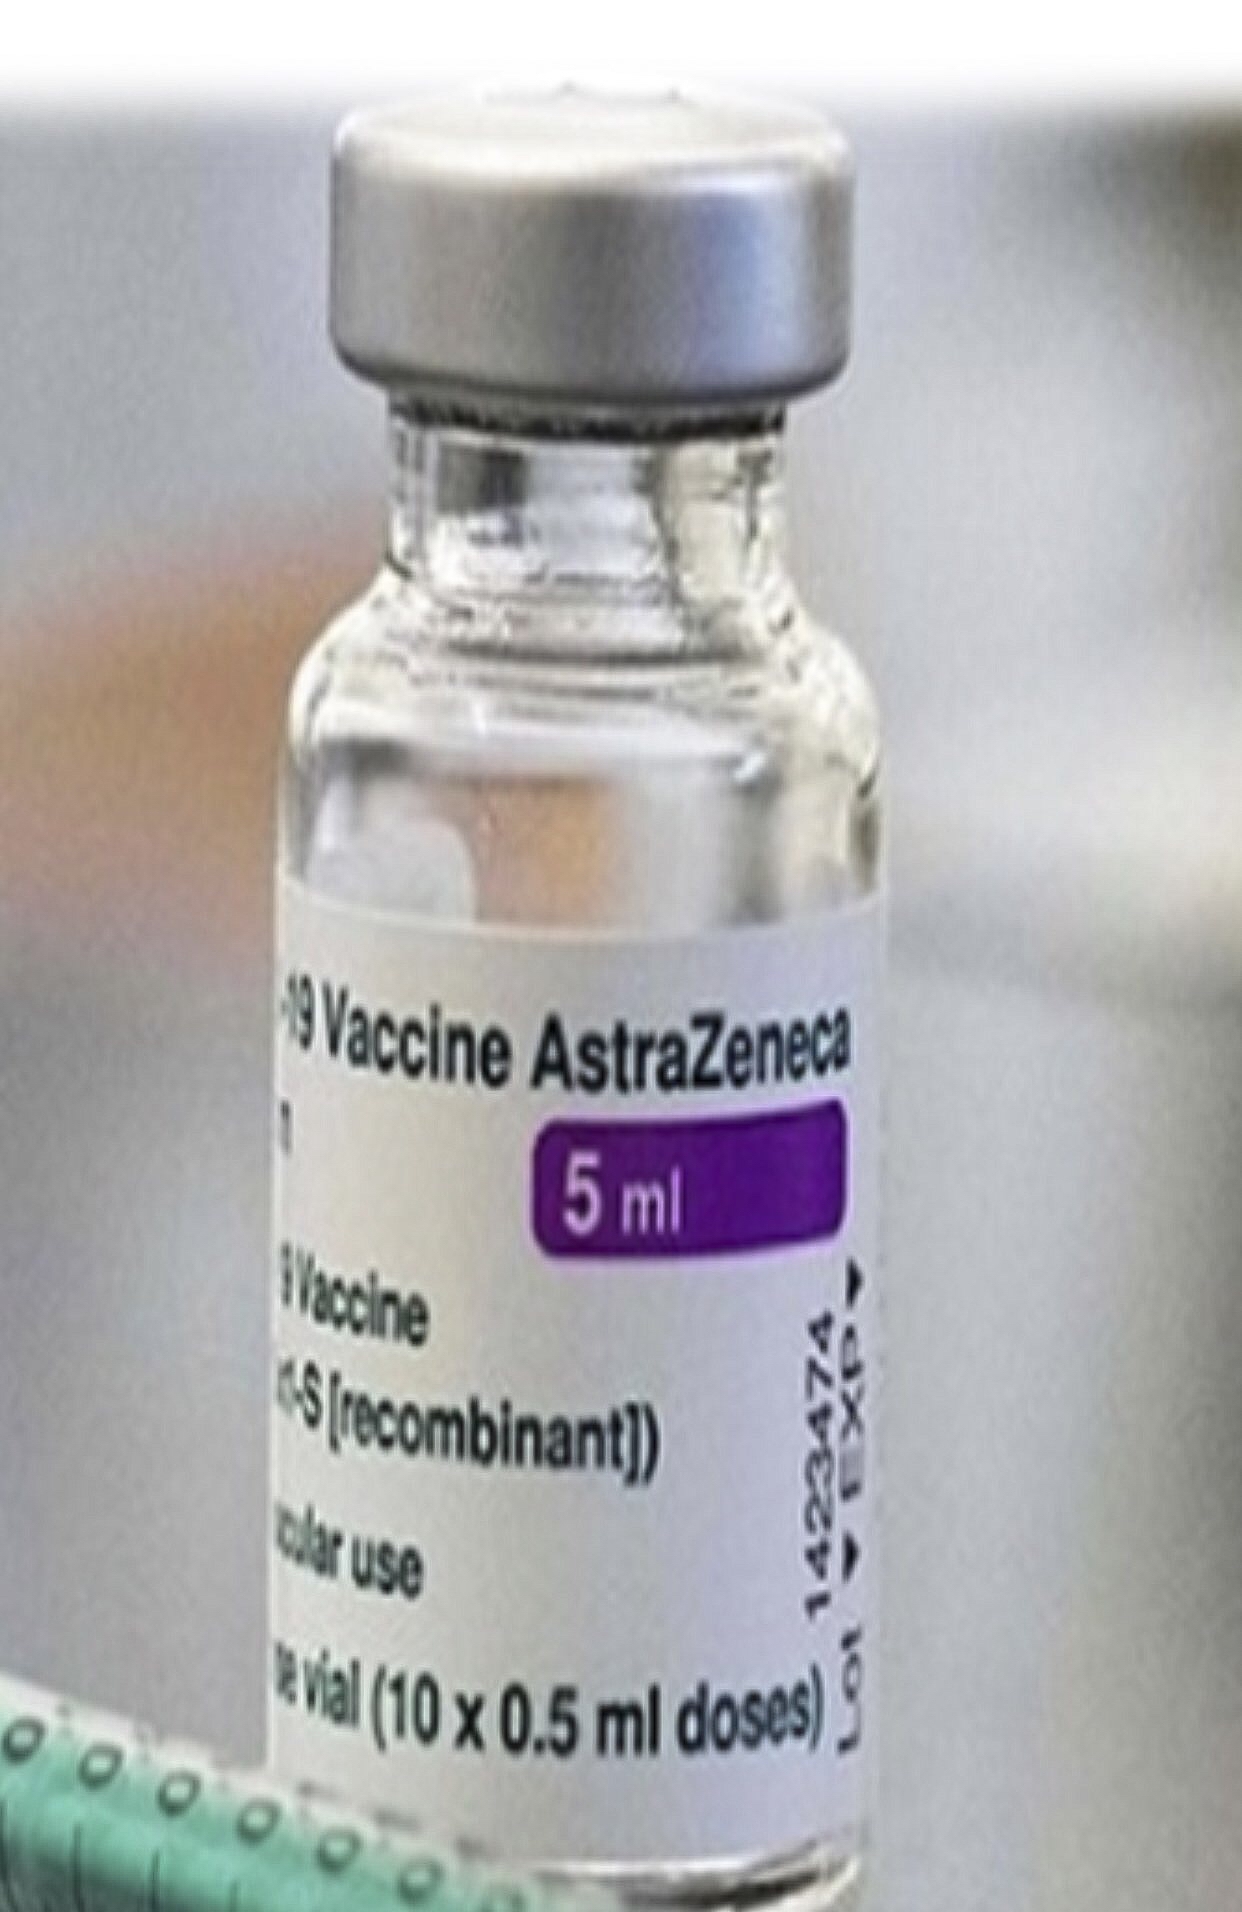 Tiêm vaccine Covid-19 ở Hải Dương: Chưa ghi nhận phản ứng gì lớn sau khi tiêm